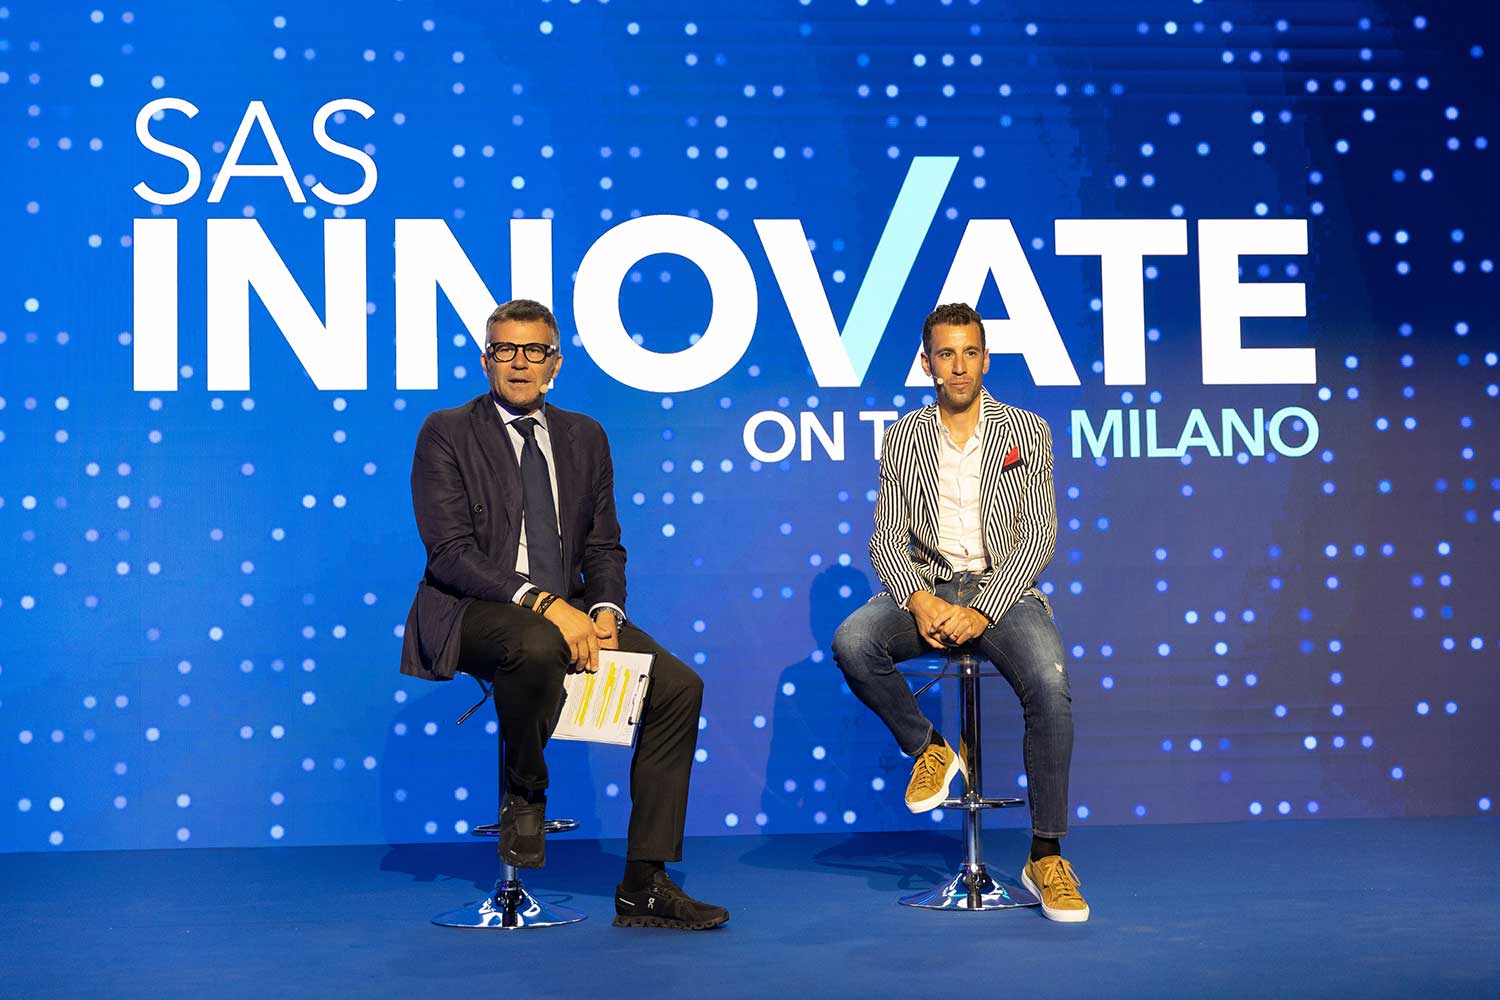 Resilienti e veloci, le aziende che innovano grazie ai dati | SAS Italy